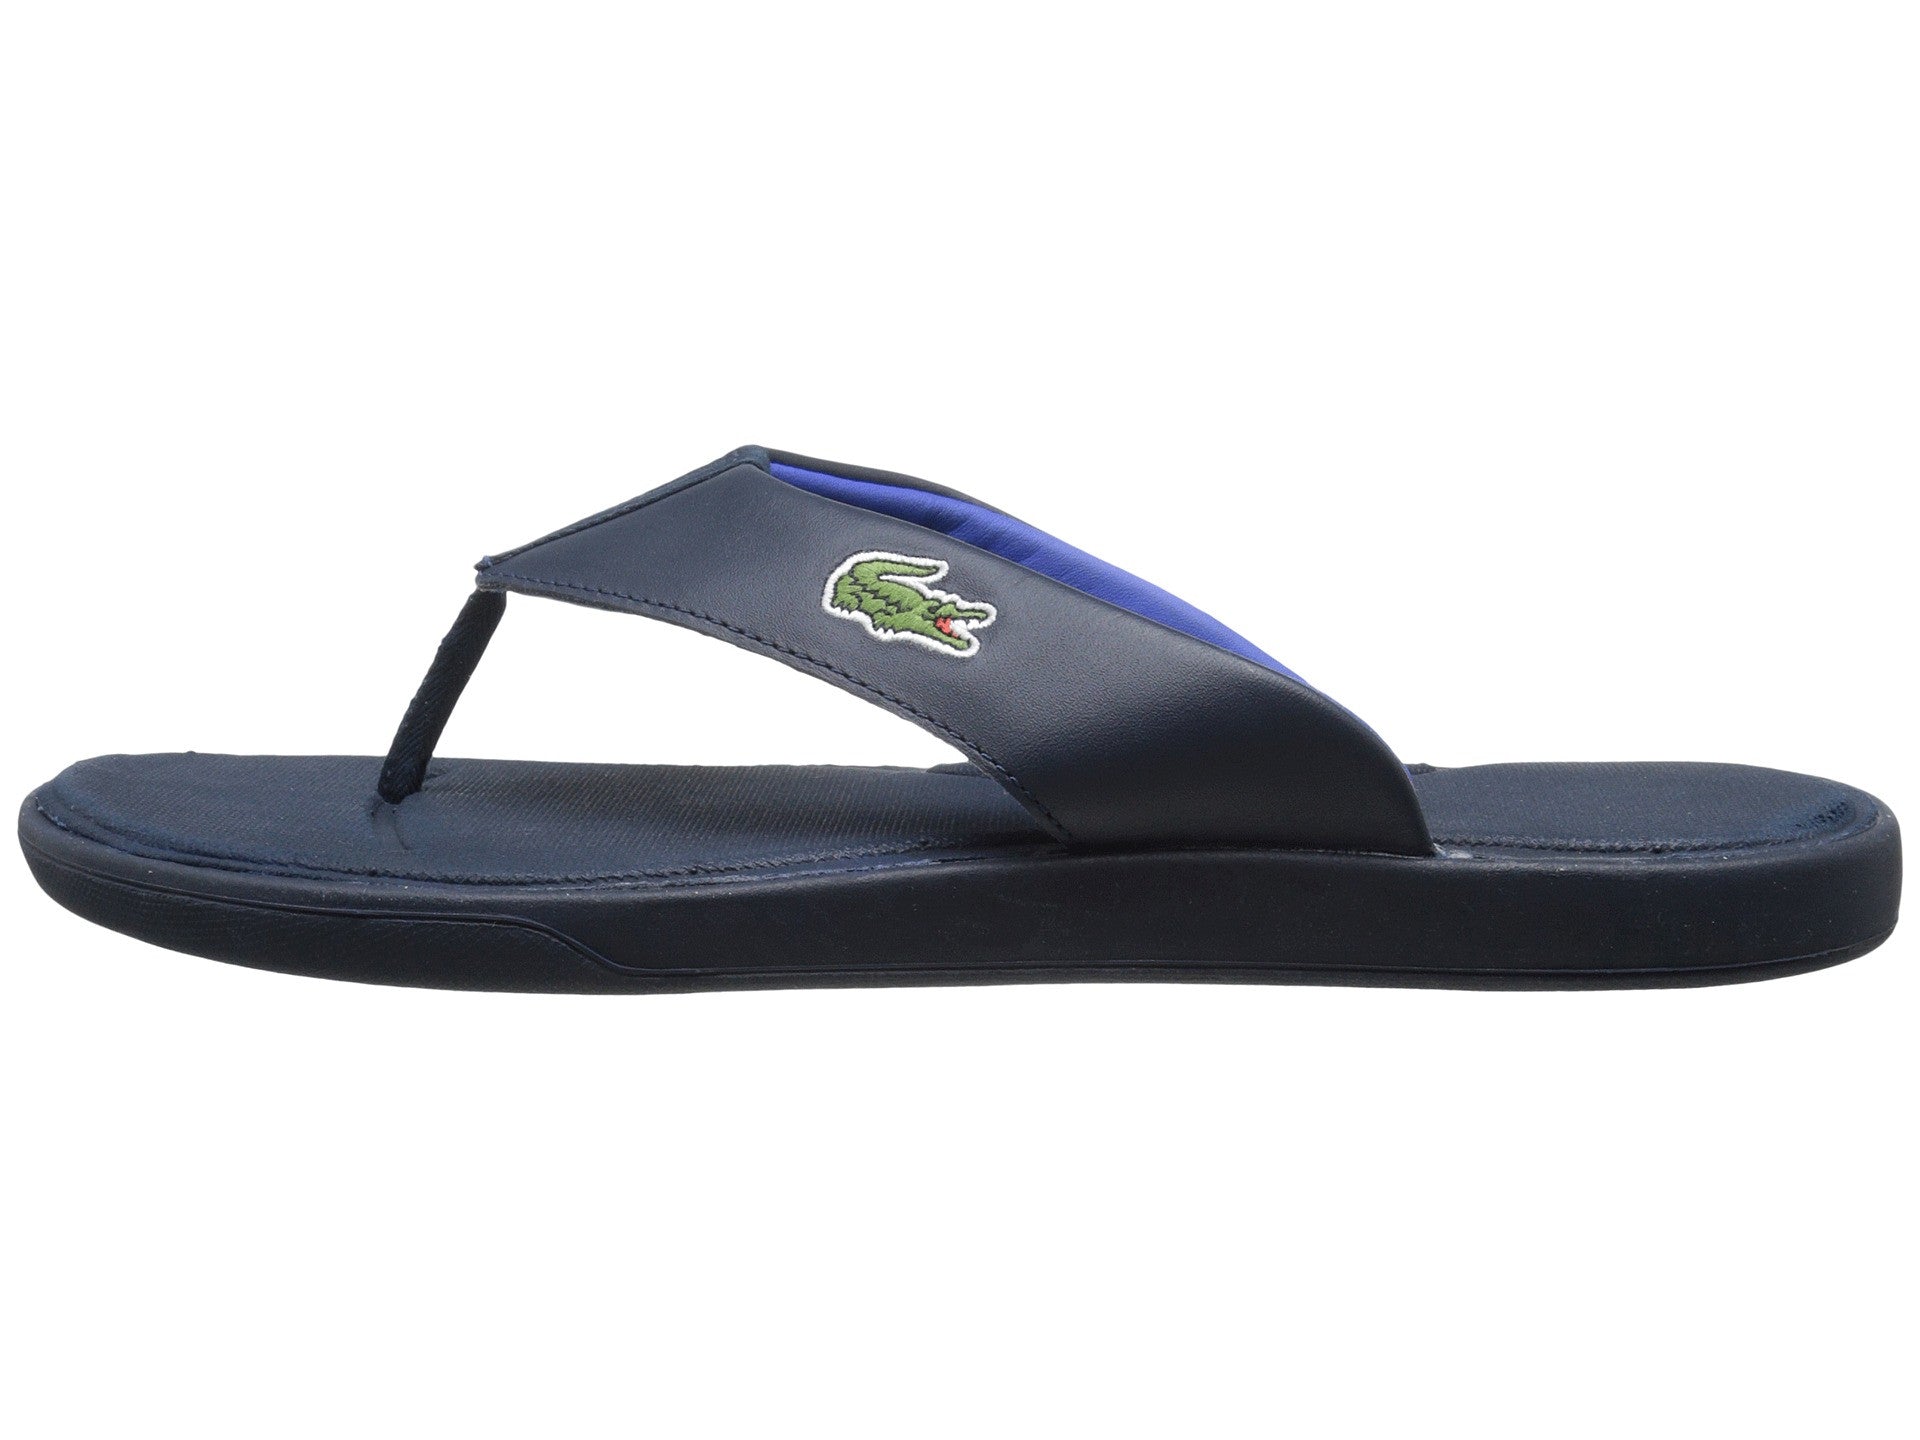 Lacoste L.30 116 1 Flip Flop Thong Sandal Shoe - -